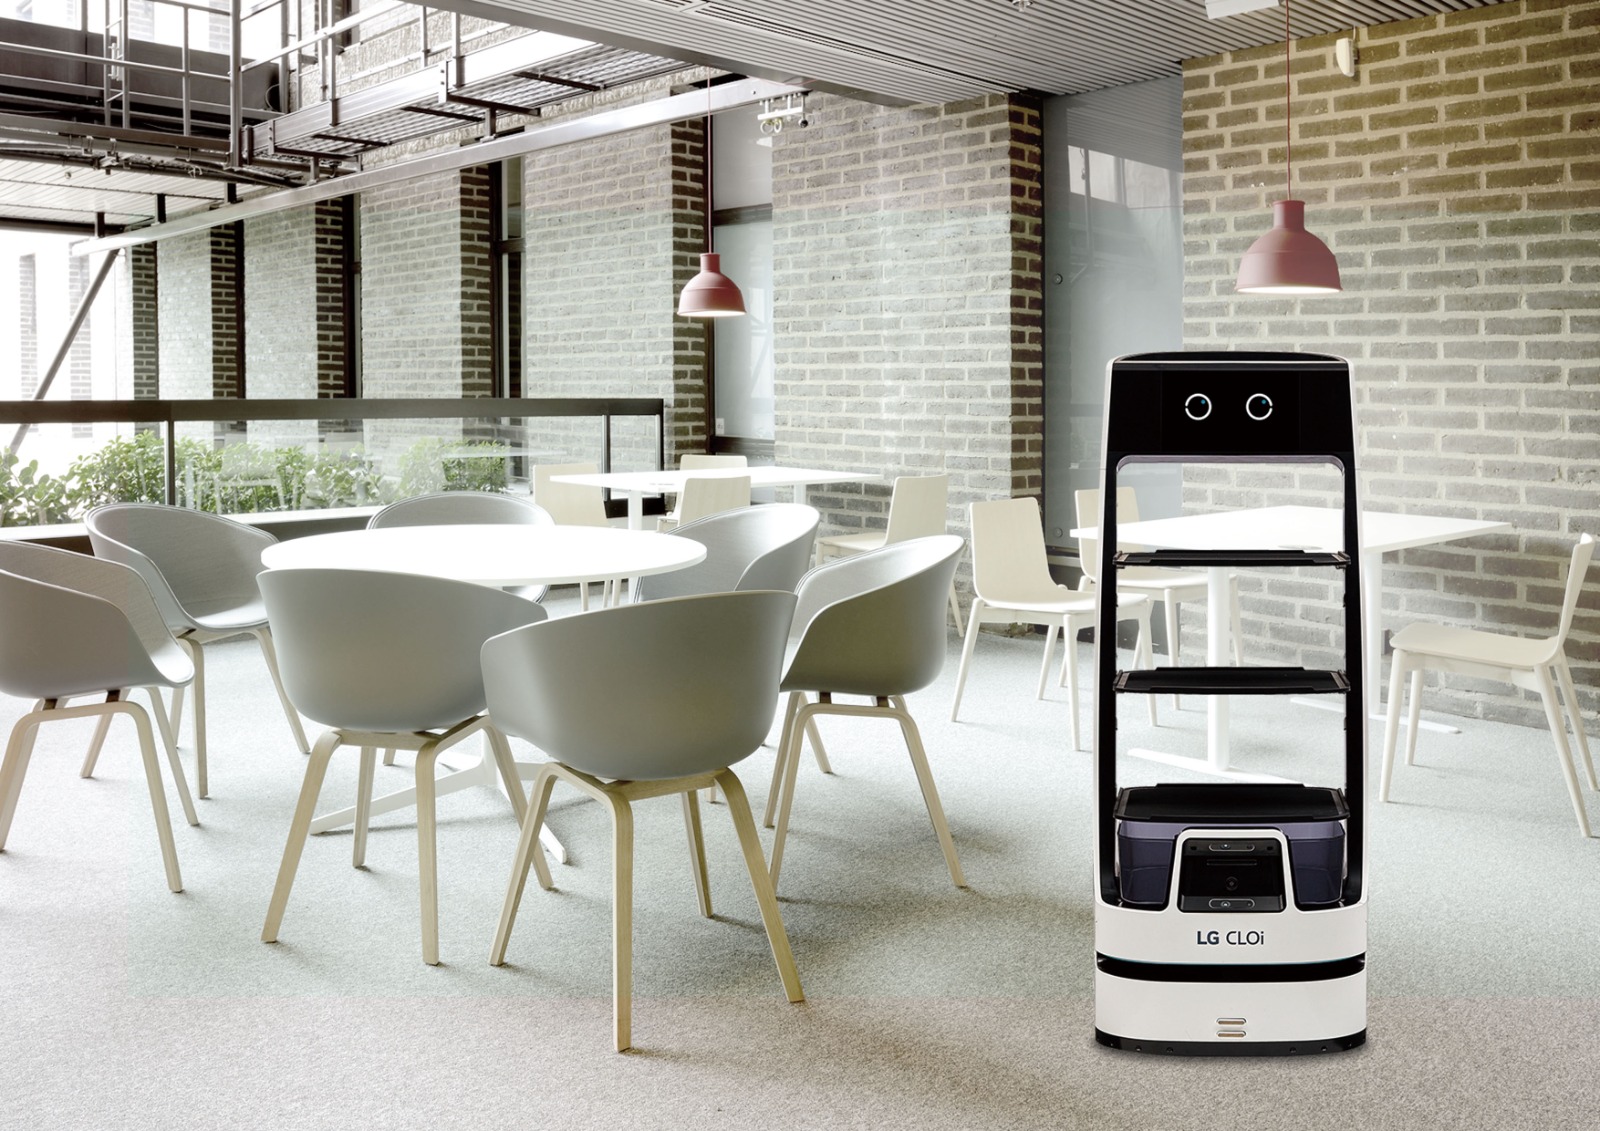 Foto de El nuevo robot LG CLOi ofrece un rendimiento<br>óptimo para servicio al cliente